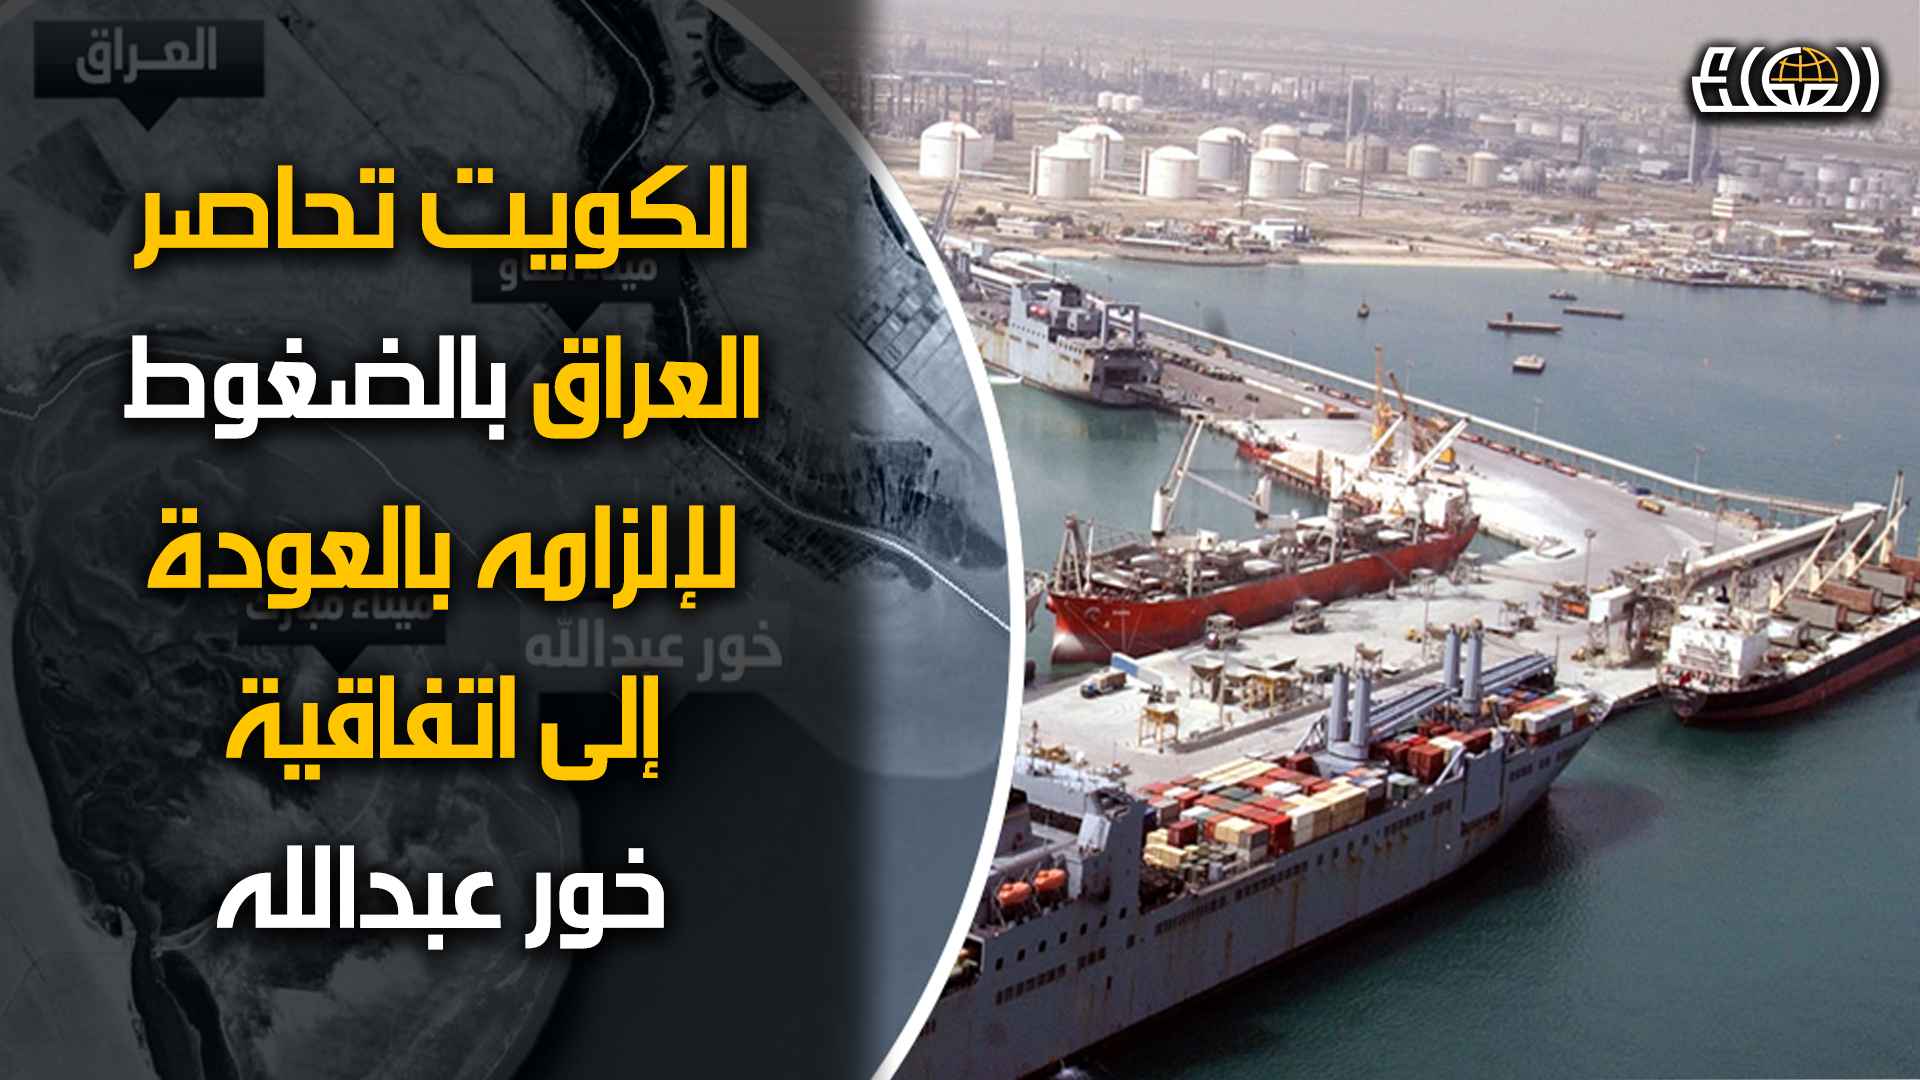 الكويت تضغط عبر مجلس التعاون الخليجي على العراق للعودة الى اتفاقية خور عبدالله